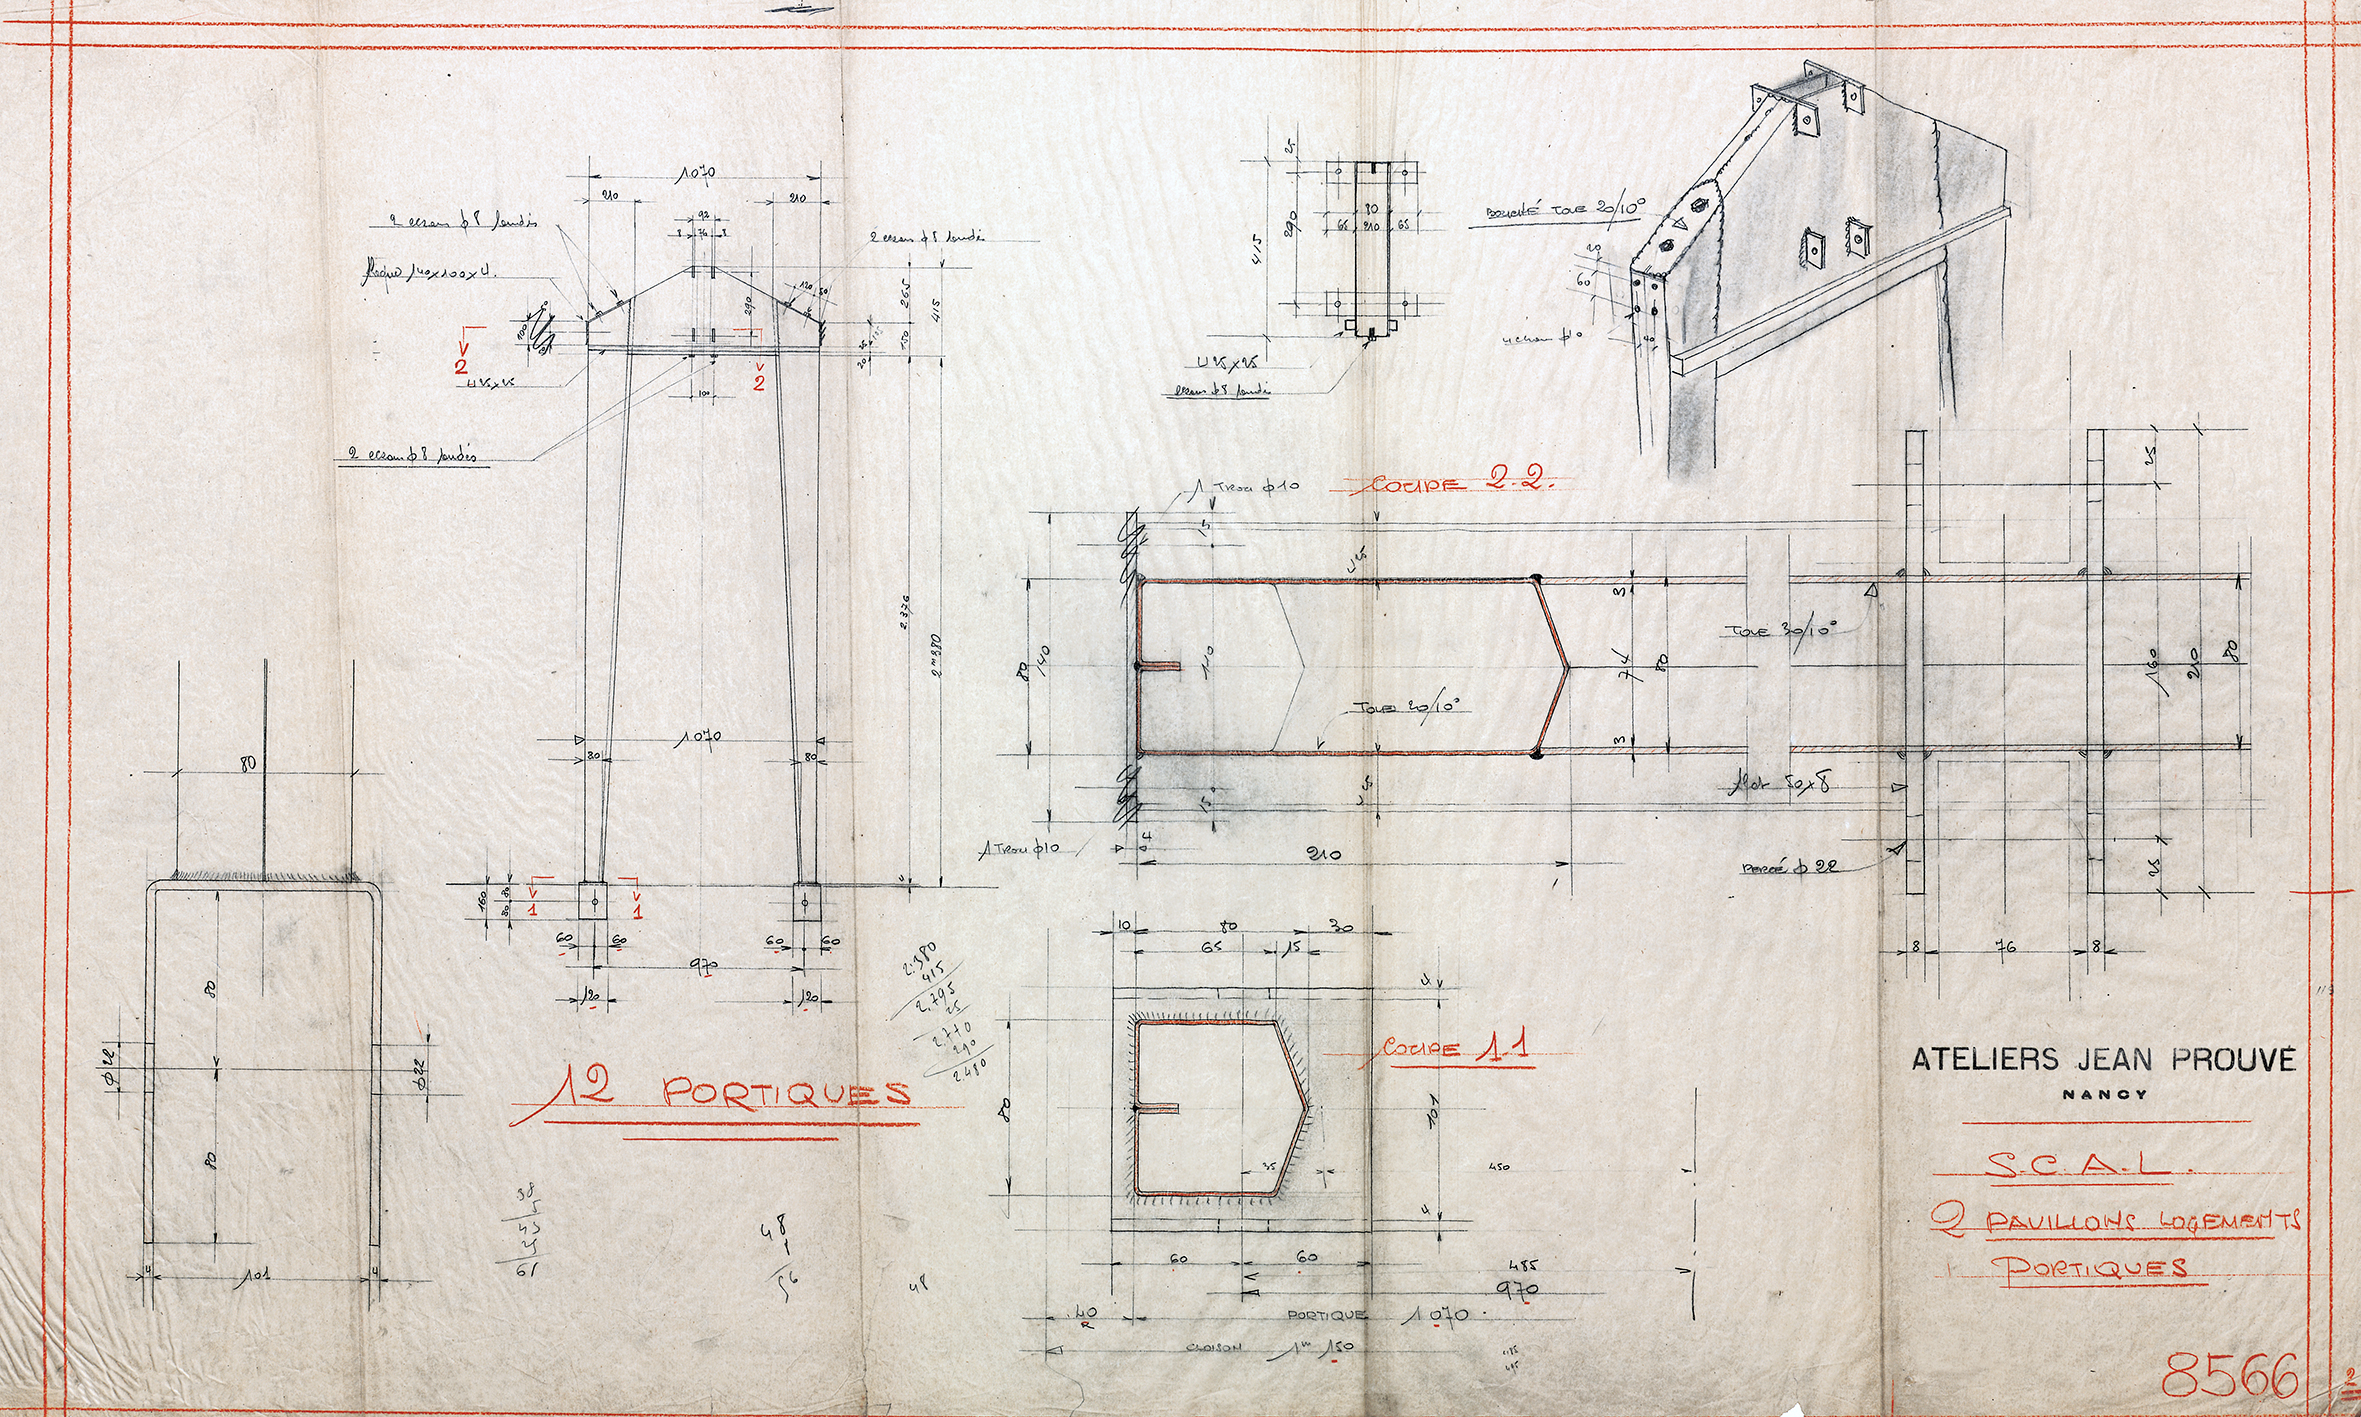 Ateliers Jean Prouvé « SCAL. 2 pavillons logements. Portiques ». Plan n° 8566, février 1940.